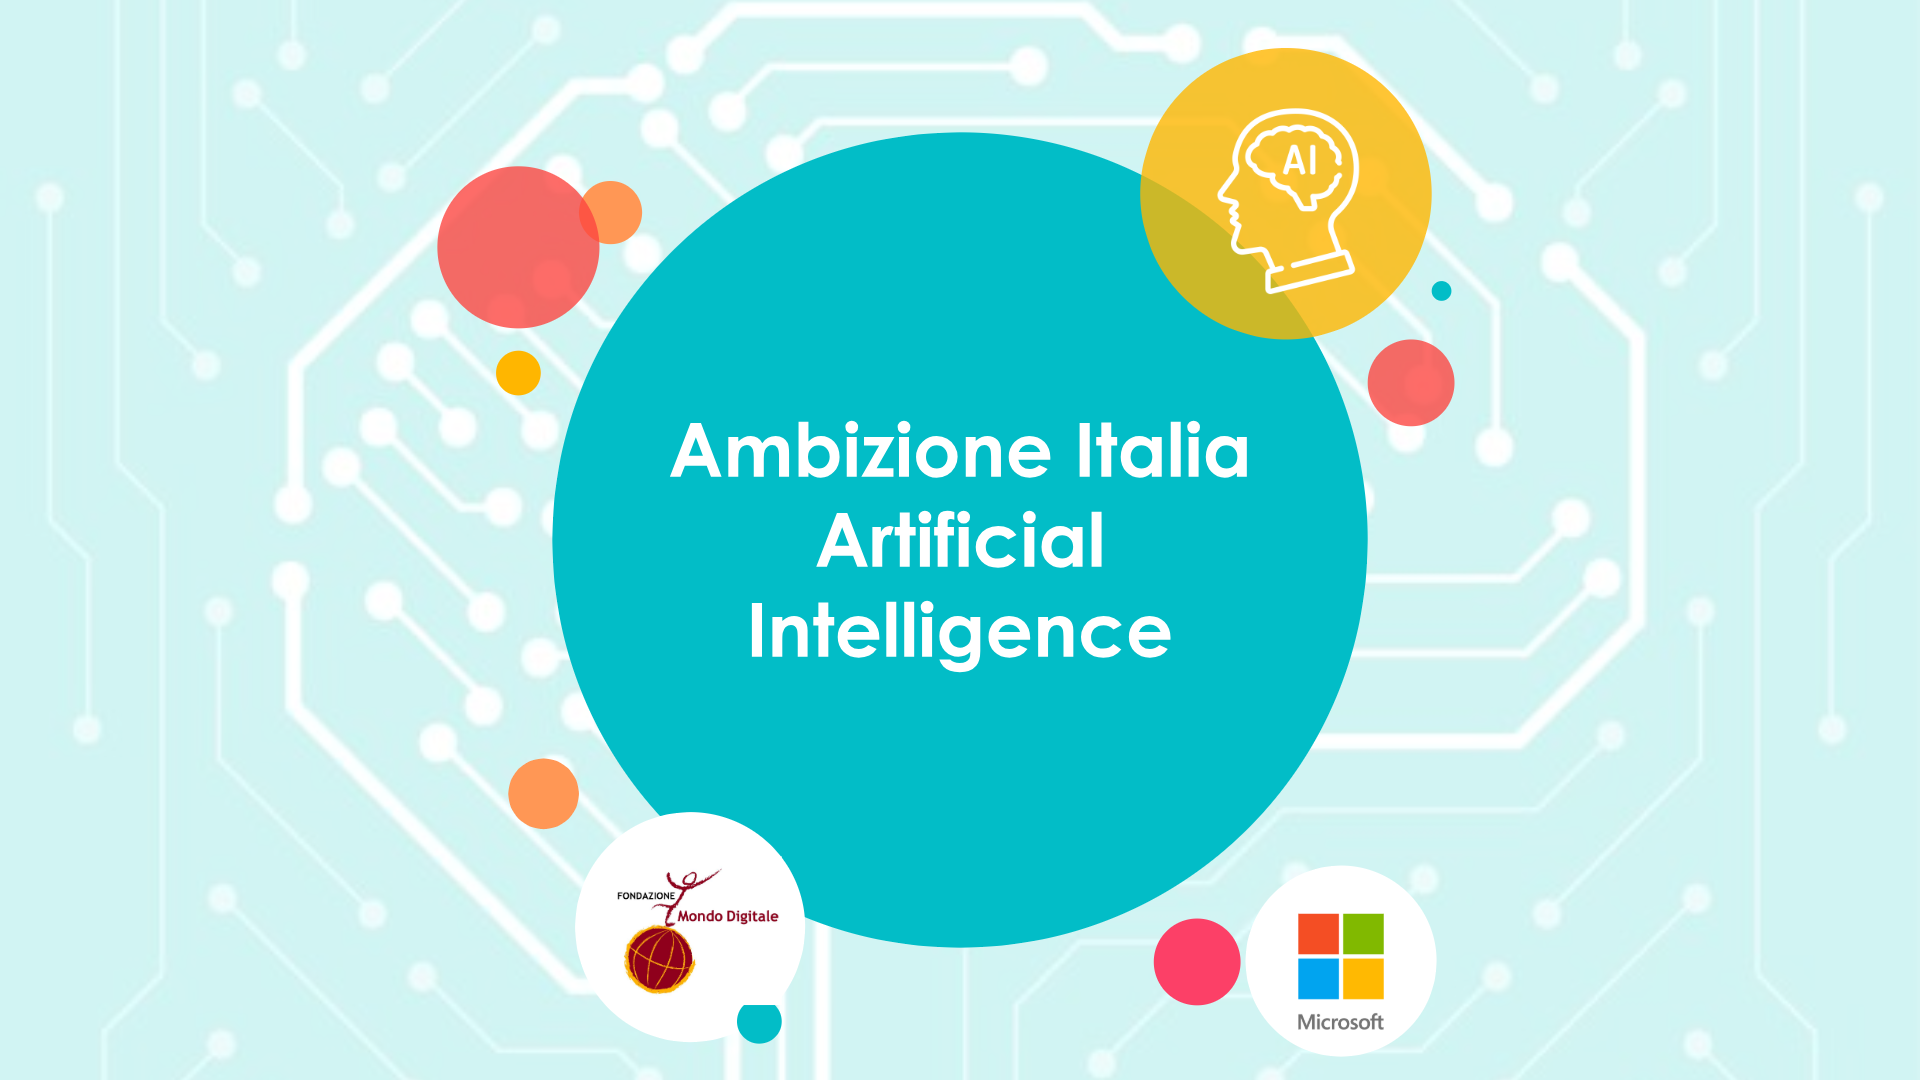 Ambizione Italia Artificial Intelligence